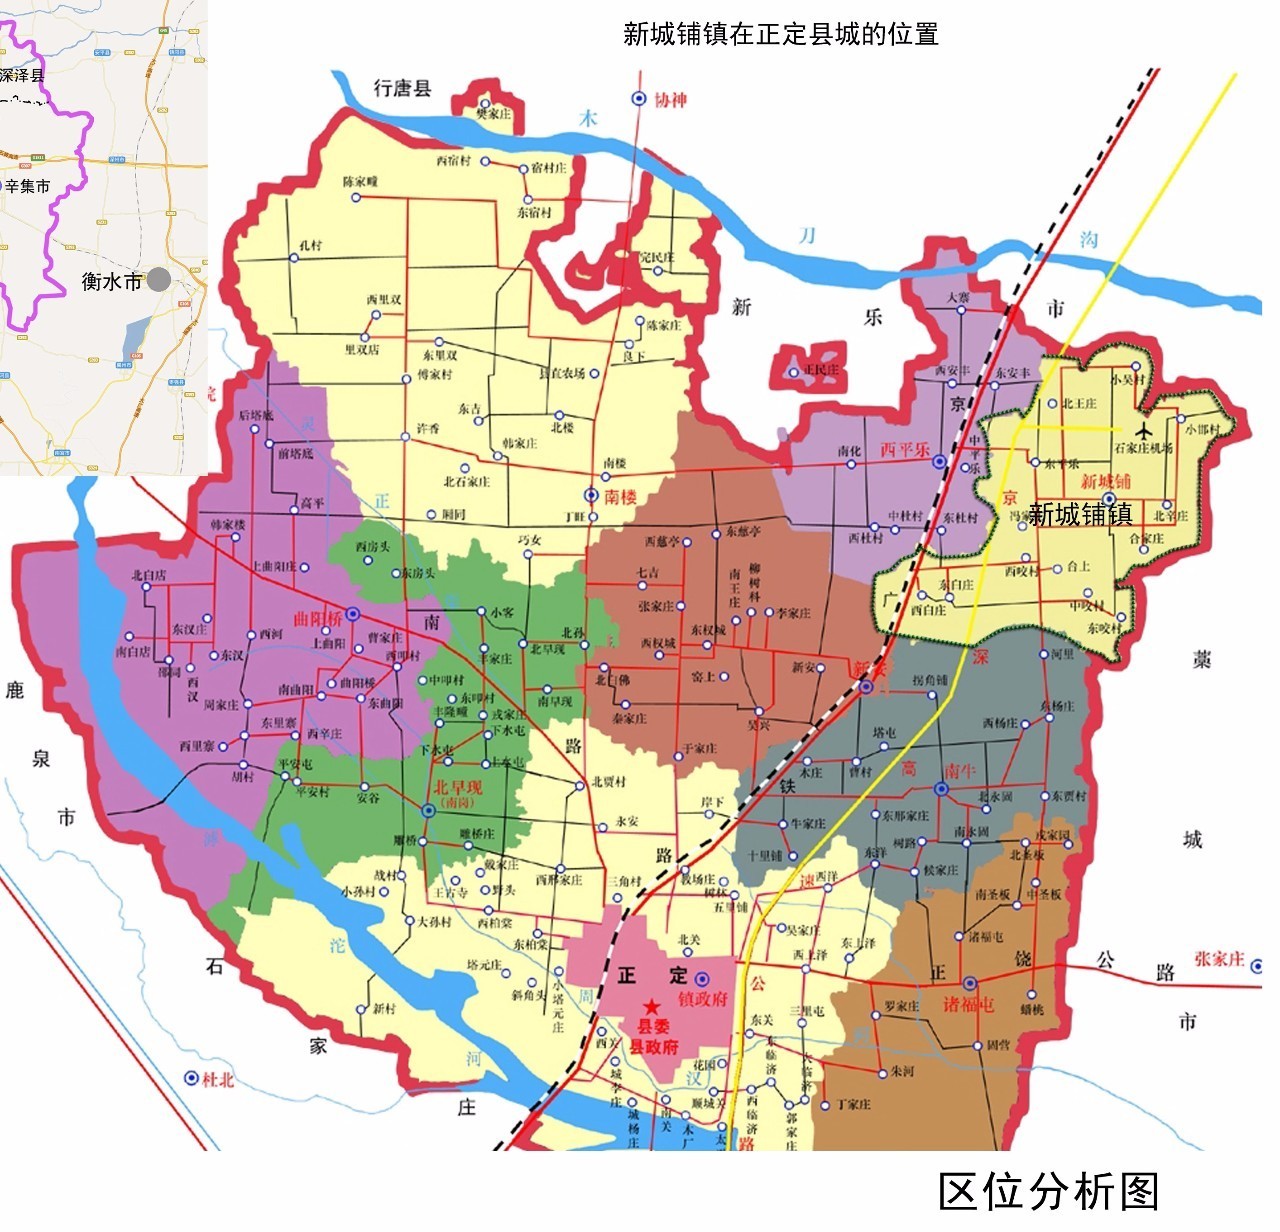 新城铺镇隶属于正定县,辖14个行政村,辖区总面积约36平方公里,2015